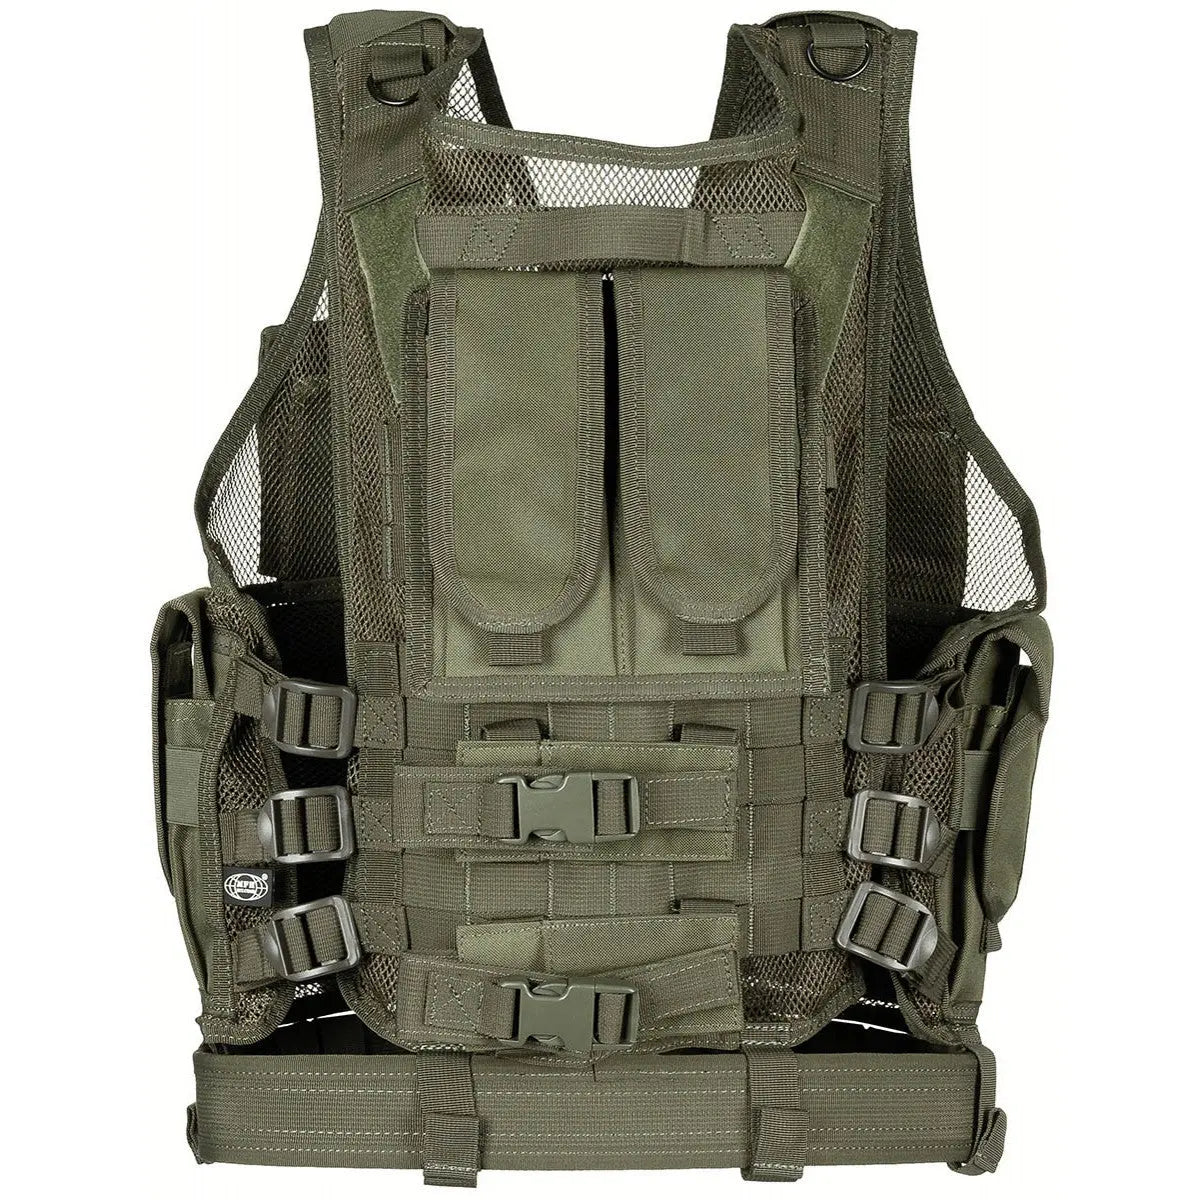 Vest, "USMC", with belt, OD green NSO Gear